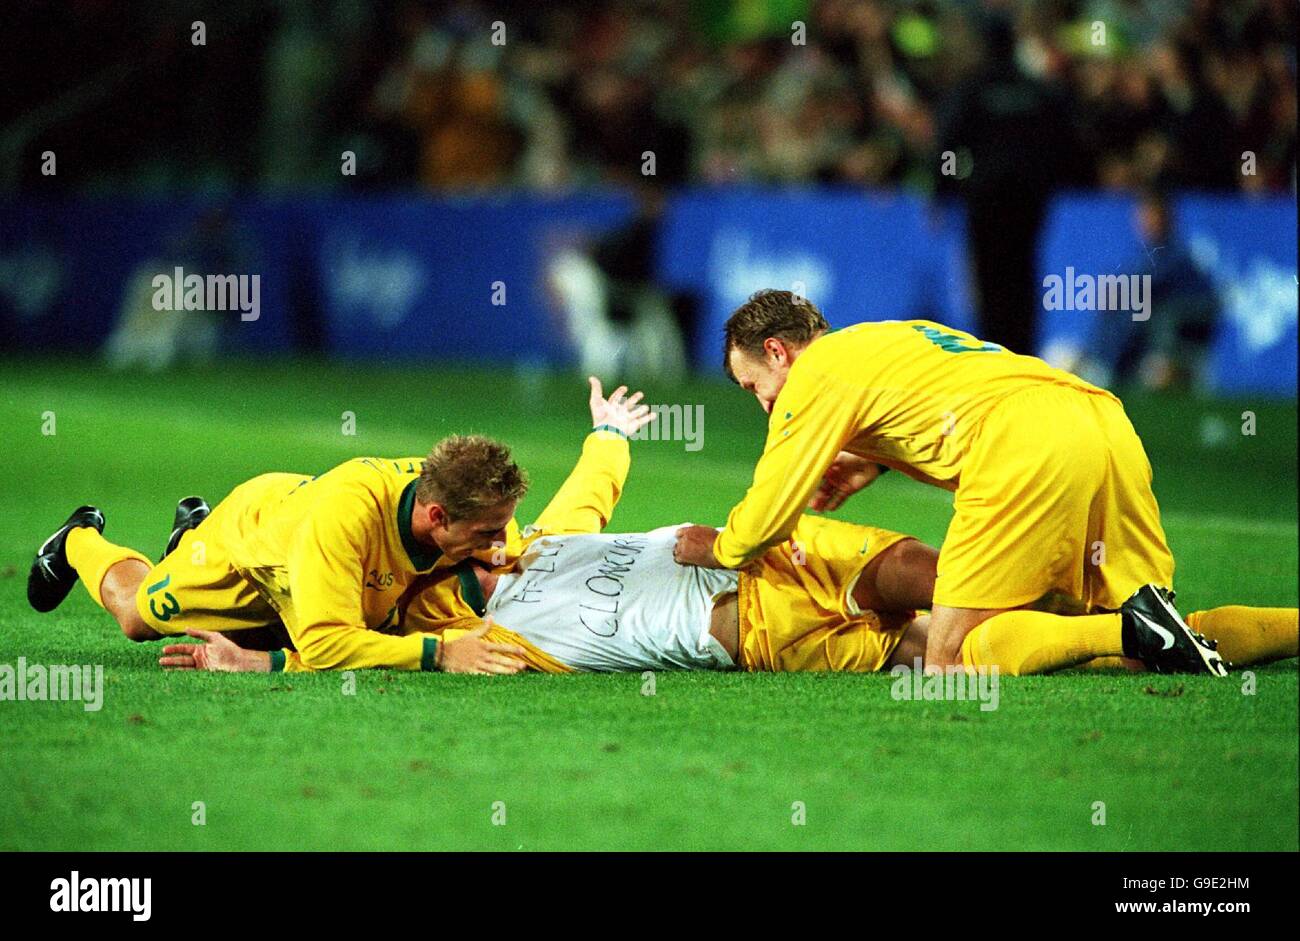 Sydney 2000 Olympics -Men's Soccer - Australia v Nigeria Stock Photo